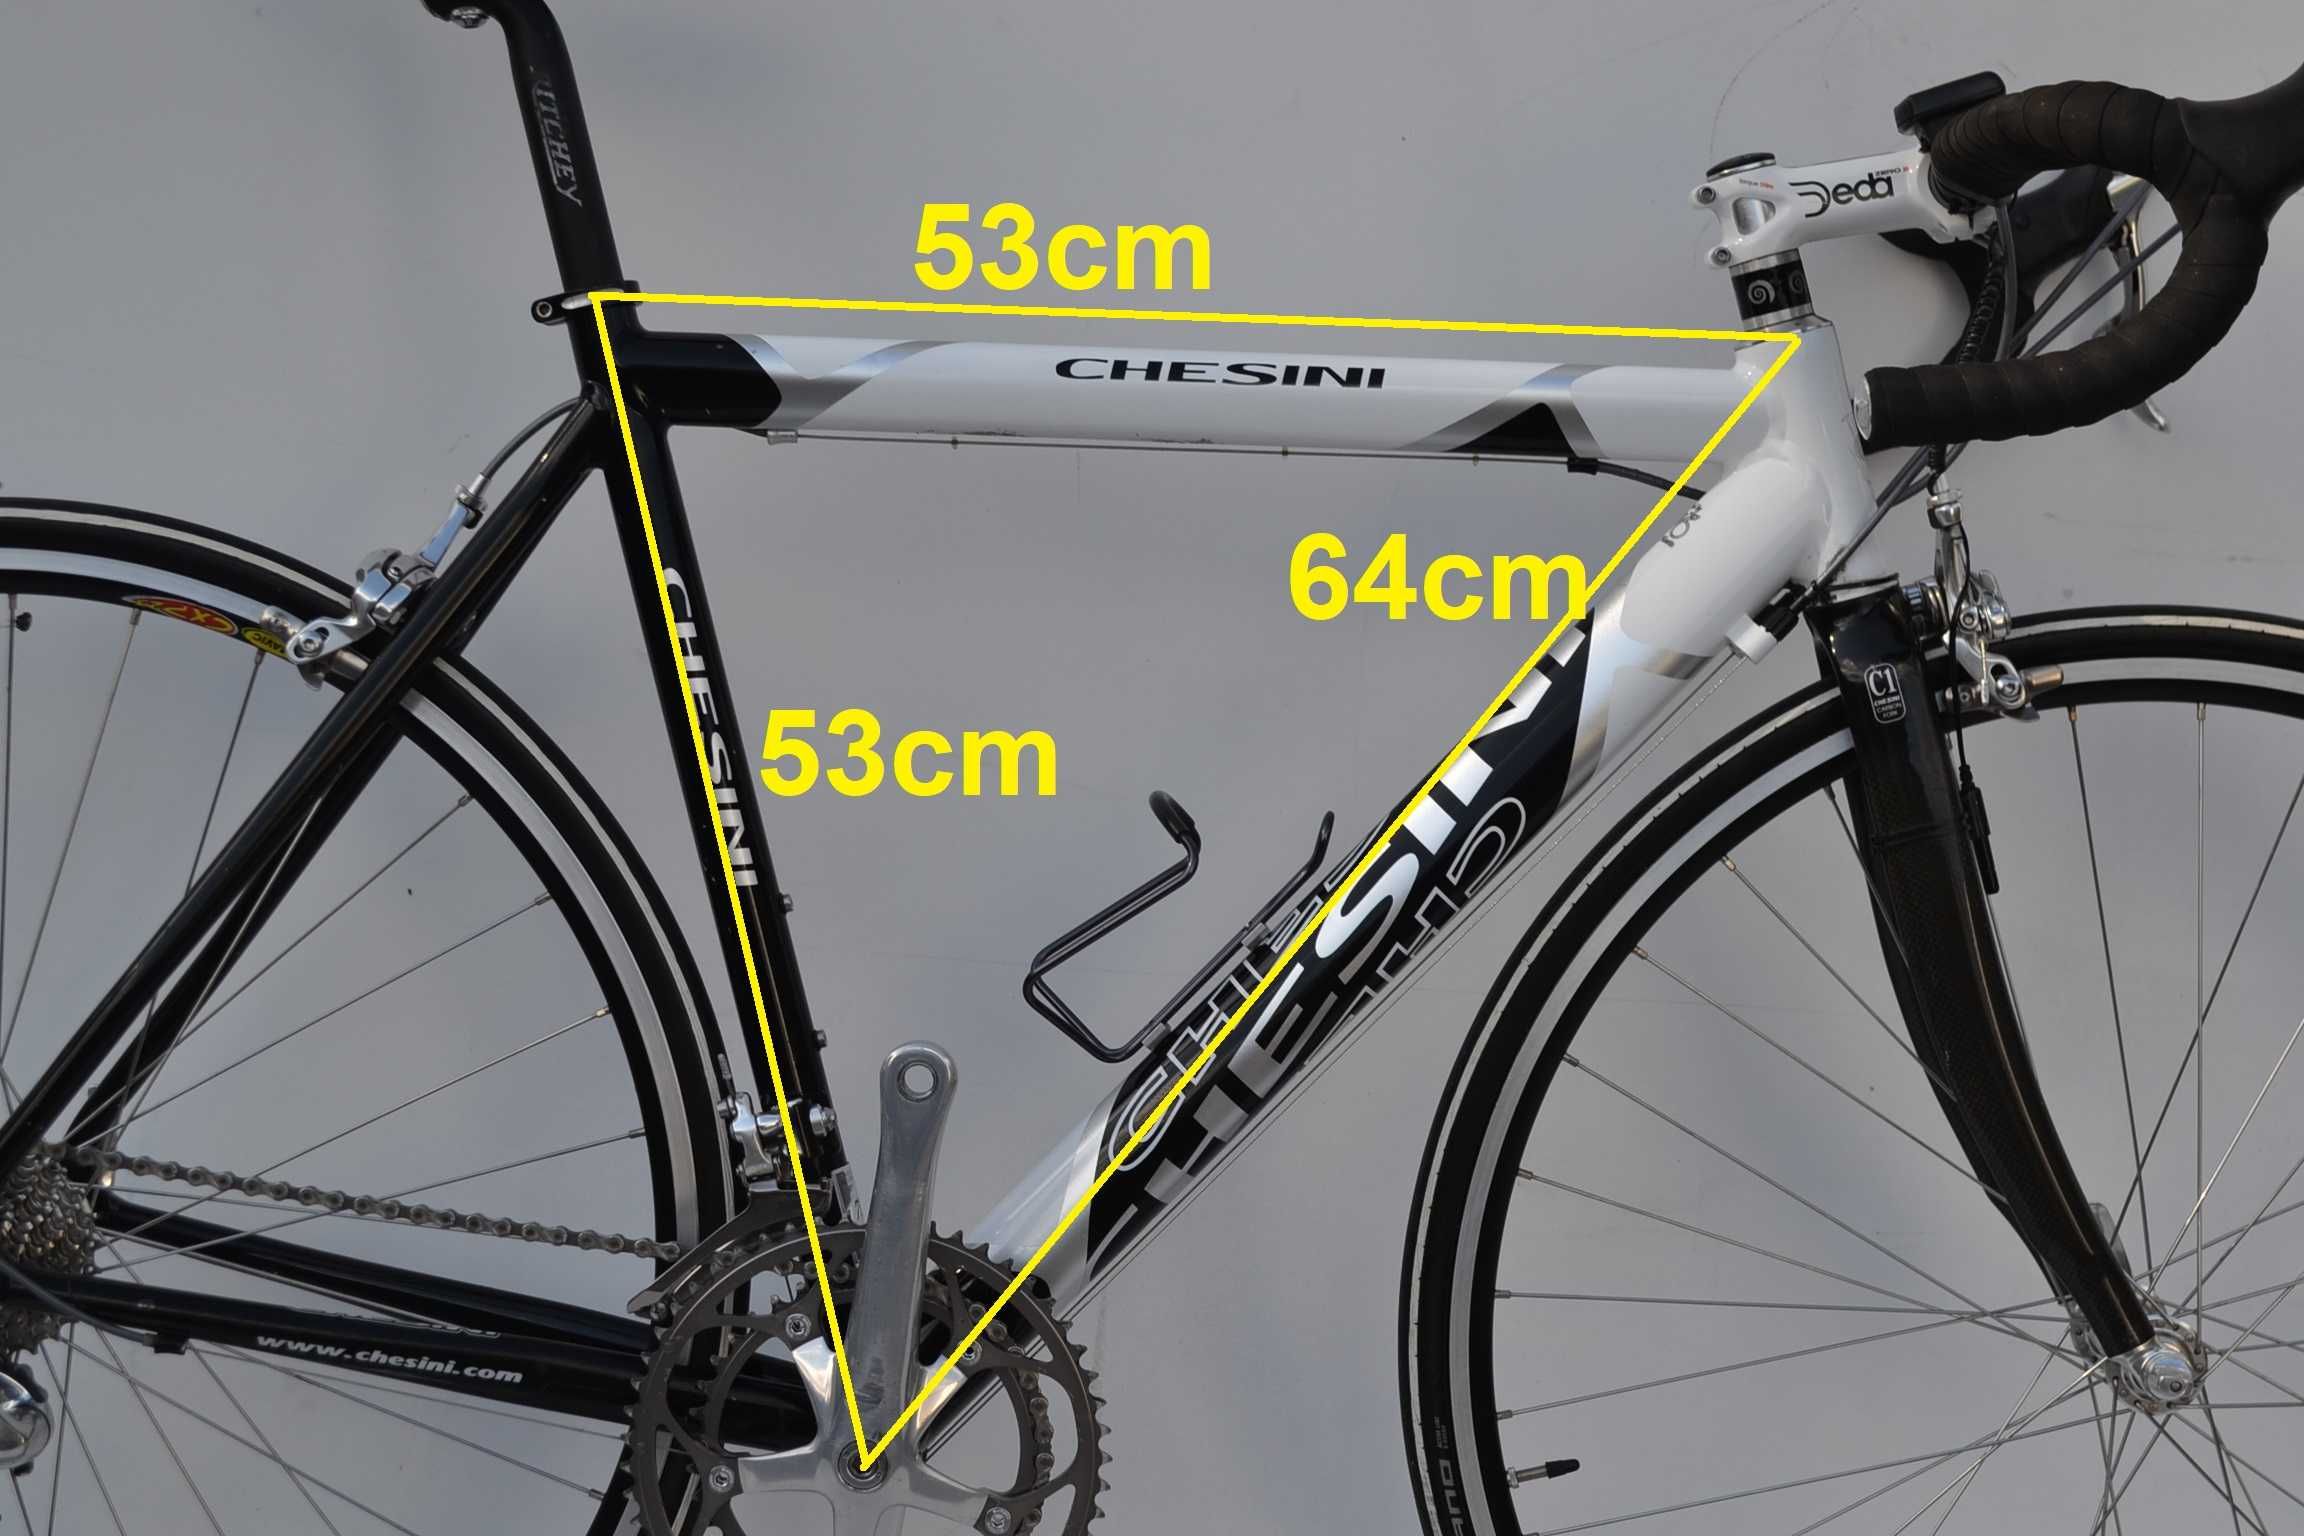 Włoski rower szosowy CHESINI 2x9 dura-ace alu/carbon rama 53cm polecam